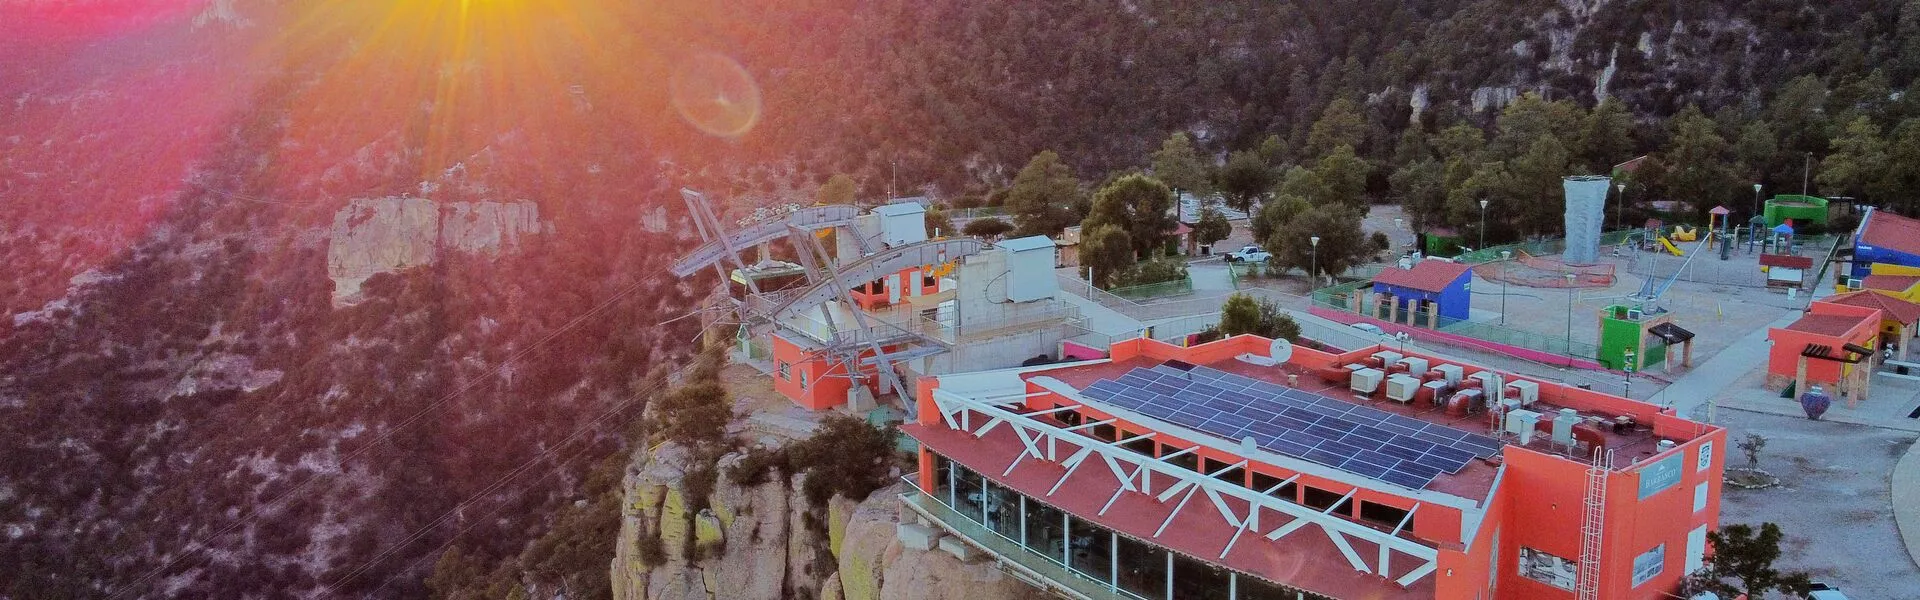 Day by Day, Ray by Ray, SunPower Performance panels are powering el Parque de Aventura Barrancas del Cobre. 